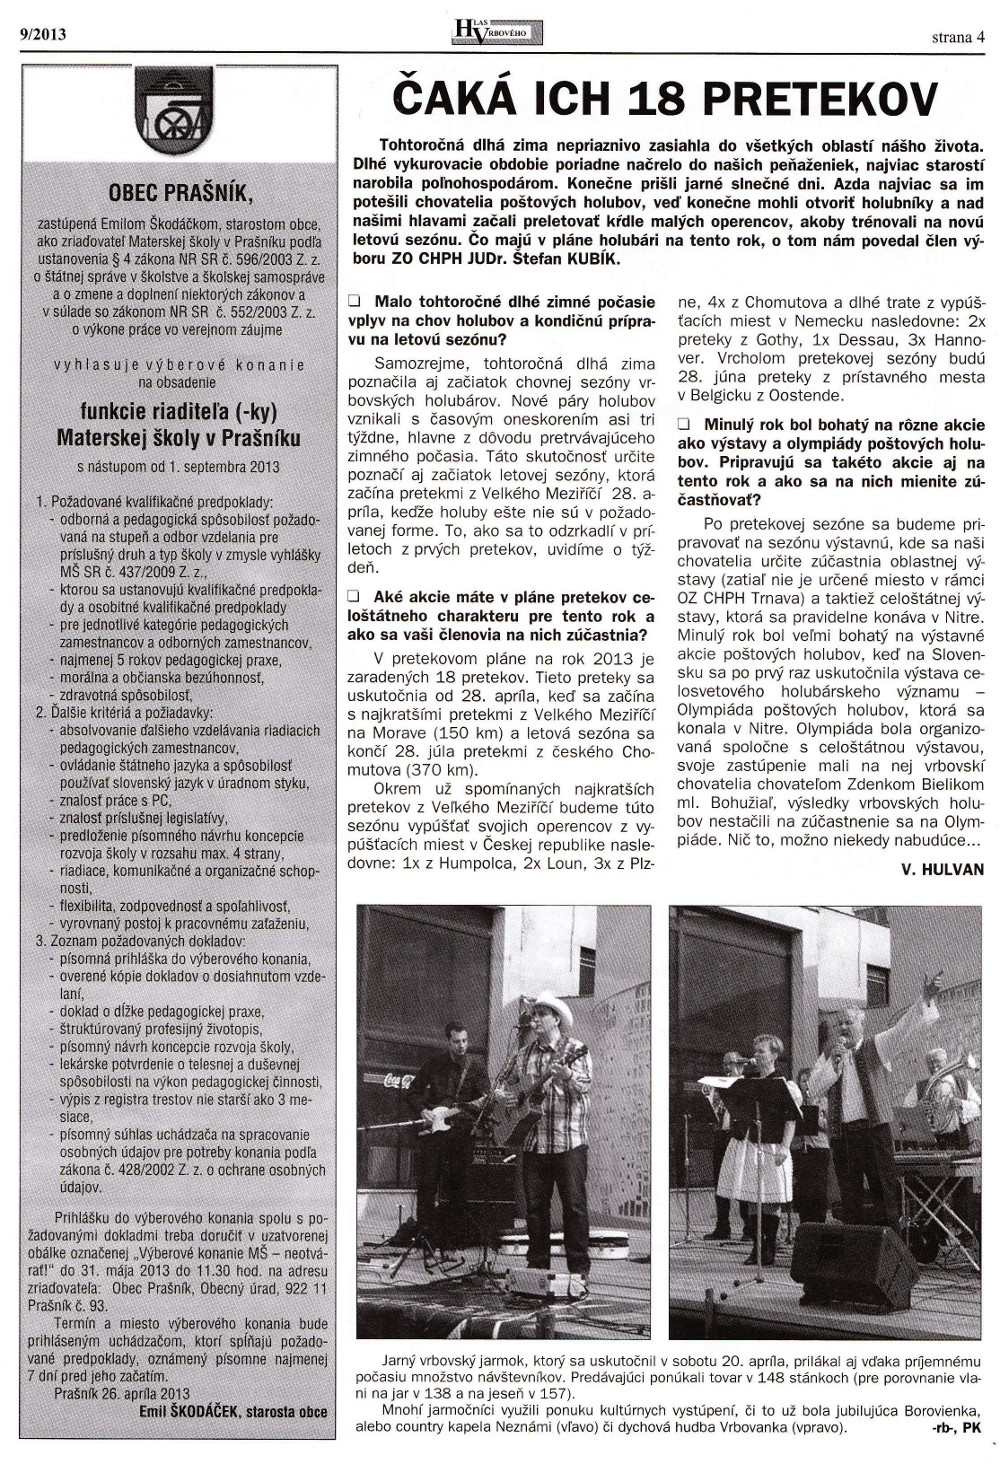 Hlas Vrbového 09/2013, strana 4